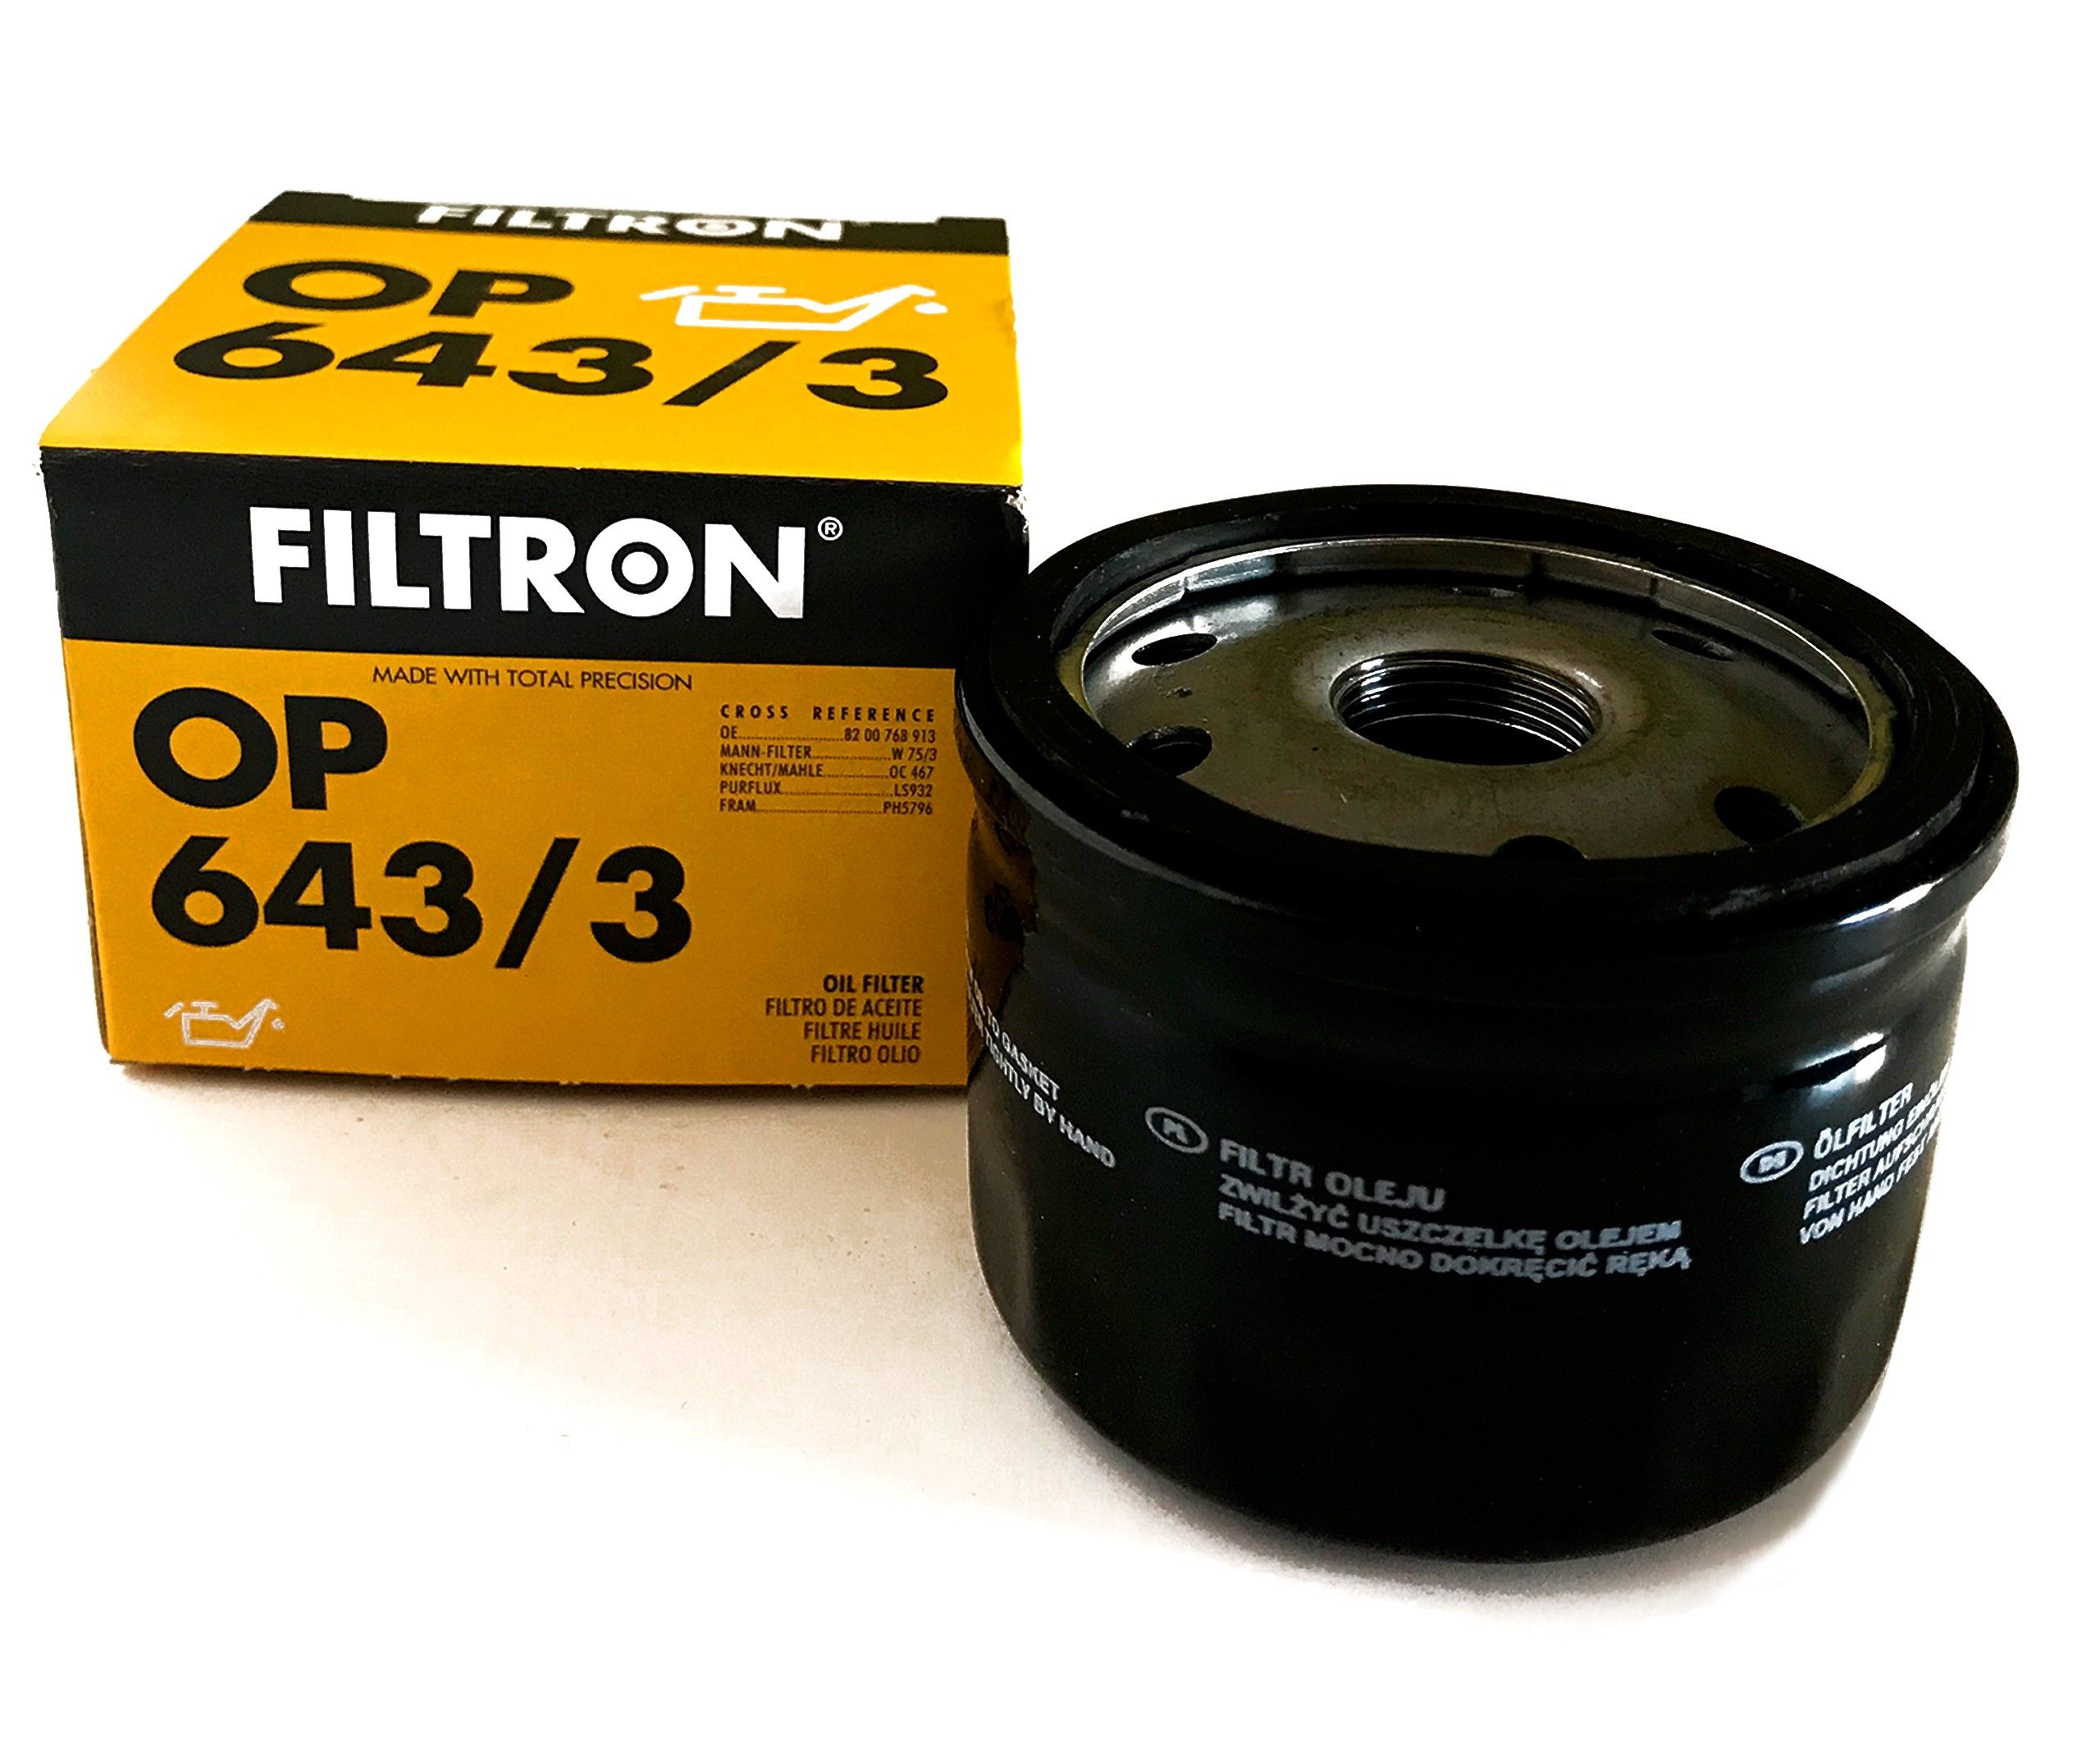 Купить фильтр filtron. Фильтр масляный op643/3. FILTRON op6433 фильтр масляный. Фильтрон op643/3. Фильтр масляный Рено Дастер 1.3 Фильтрон.